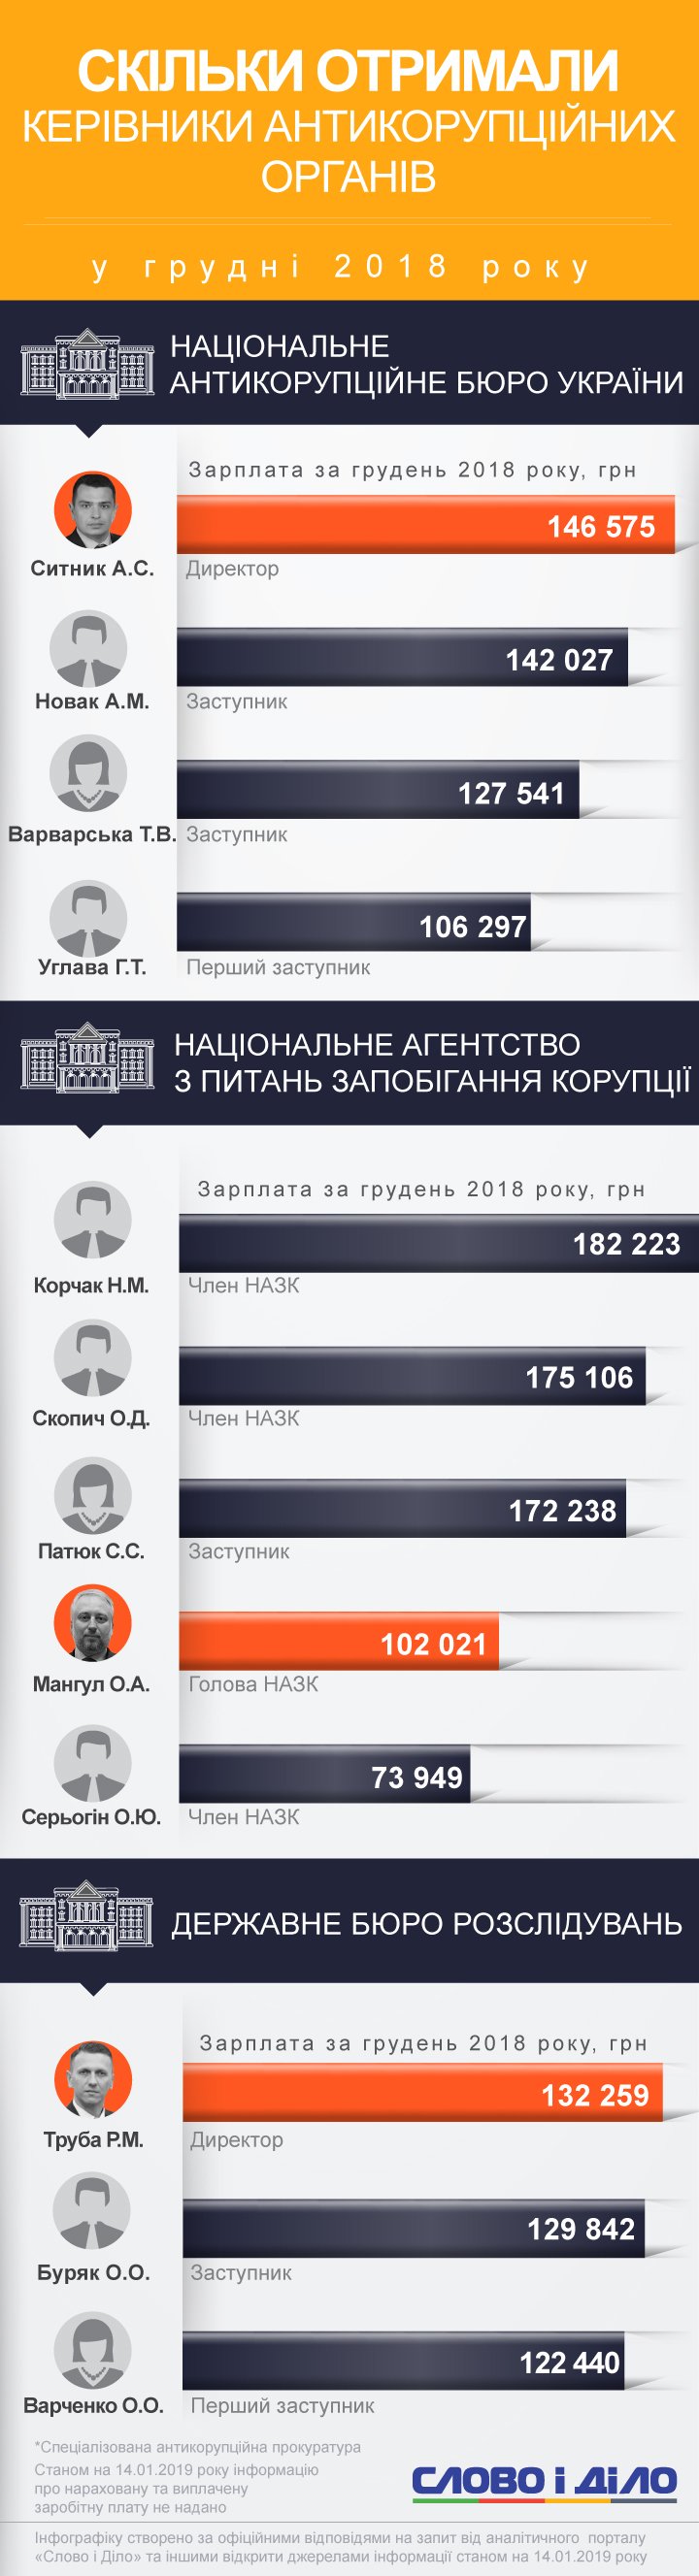 Найбільш високооплачуваним антикорупціонером грудня стала член НАЗК Корчак – їй нарахували більш ніж 182 тисячі гривень.